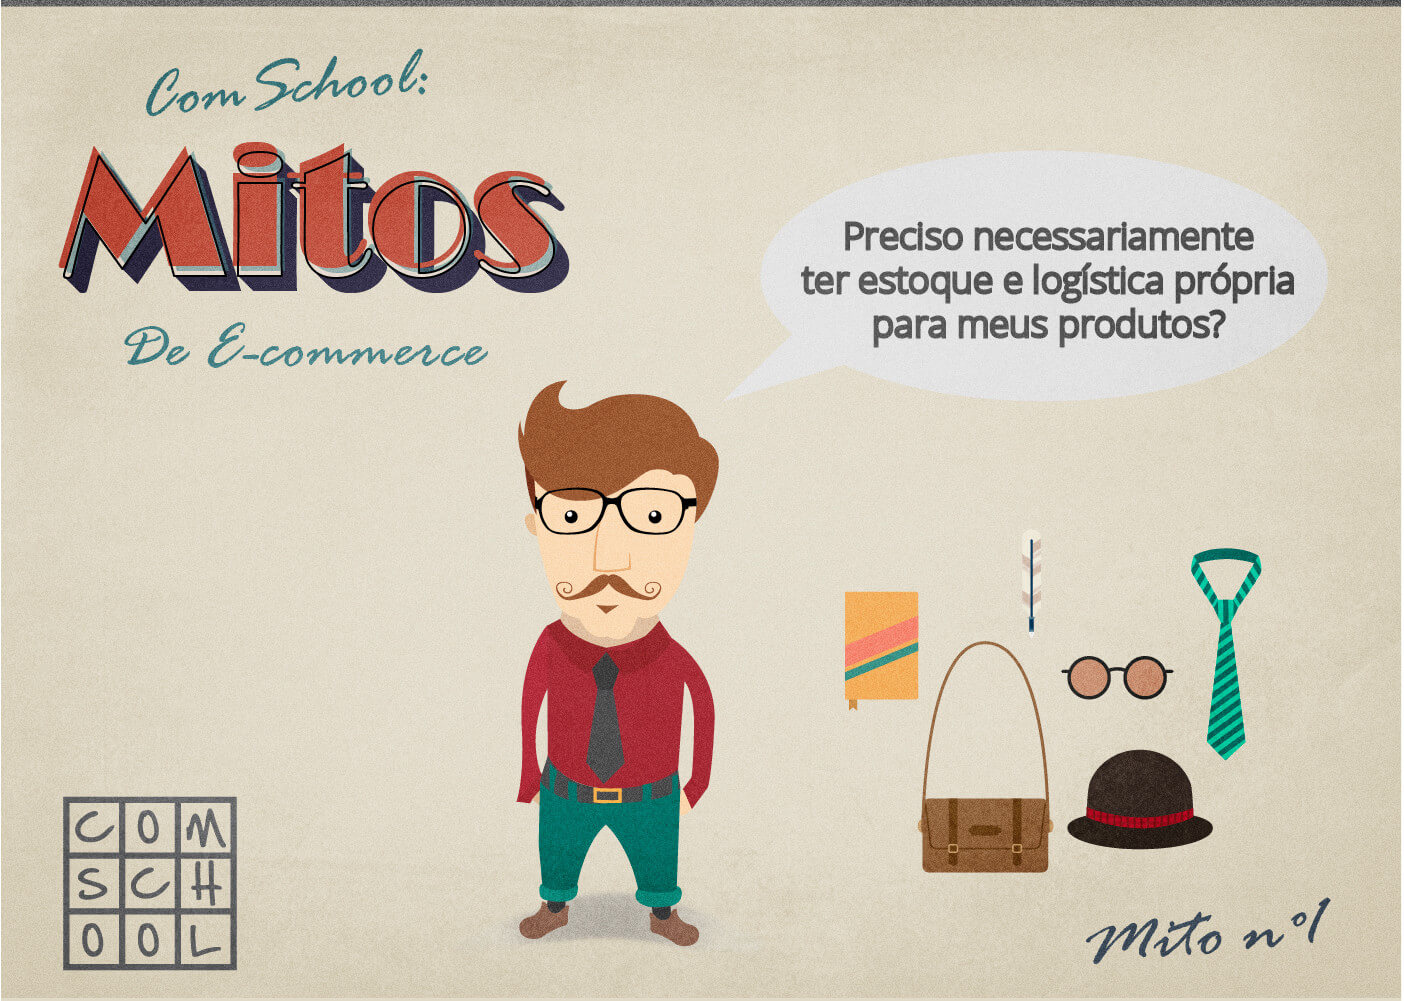 mitos-do-e-commerce-1-comschool